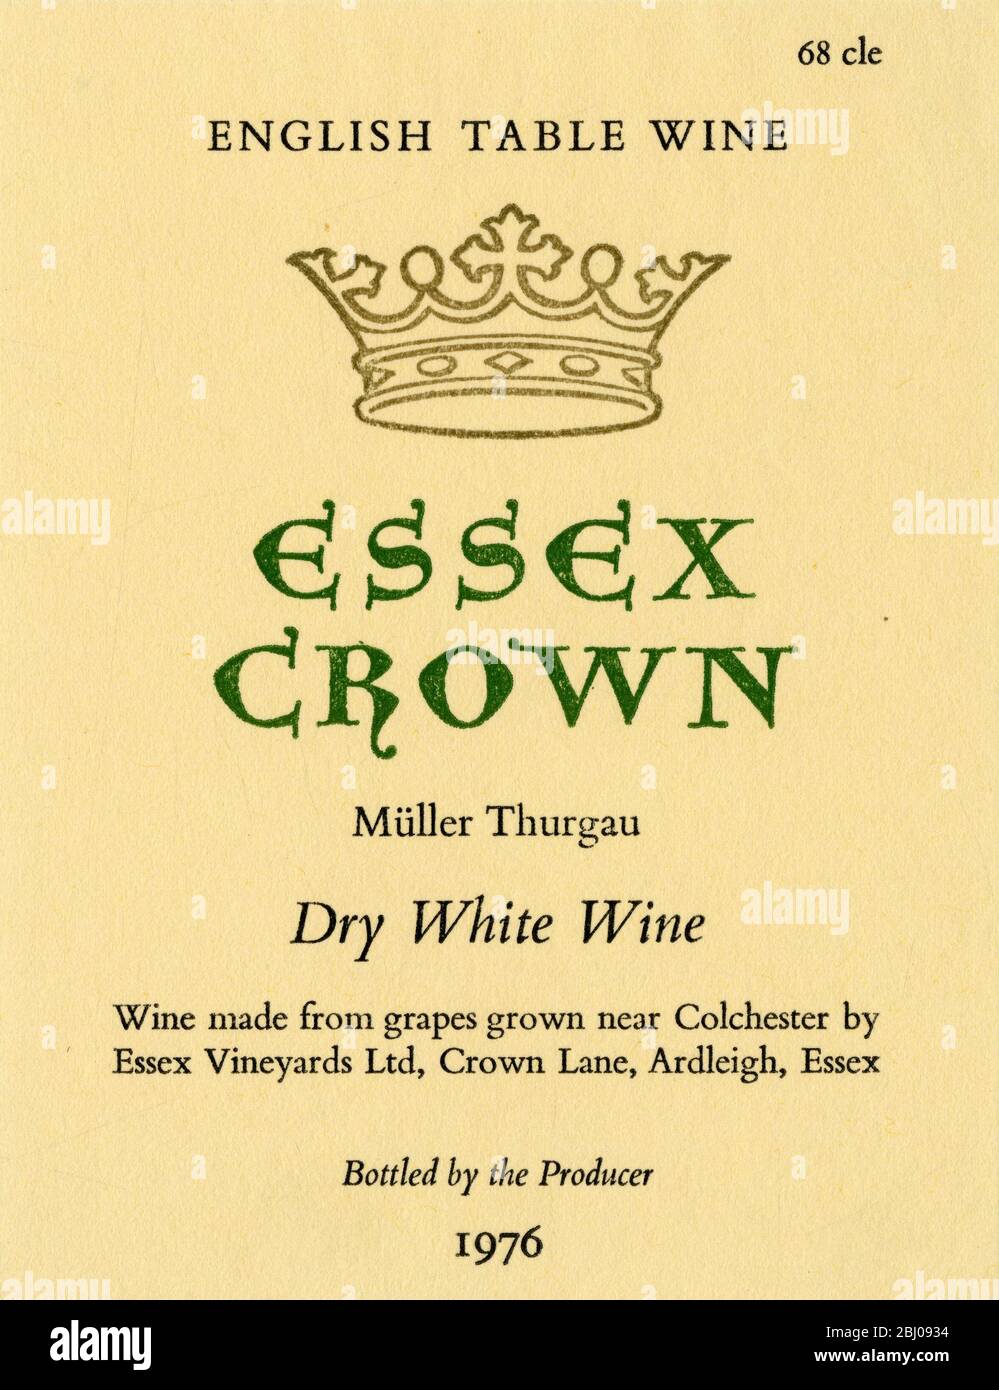 Weinetikett. - Englischer Tafelwein. Essex Crown. Müller Thurgau. Trockener Weißwein aus Trauben, die in der Nähe von Colchester von Essex Vineyards Ltd, Crown Lane, Ardleigh, Essex angebaut werden. - vom Hersteller abgefüllt. 1976. - - Stockfoto